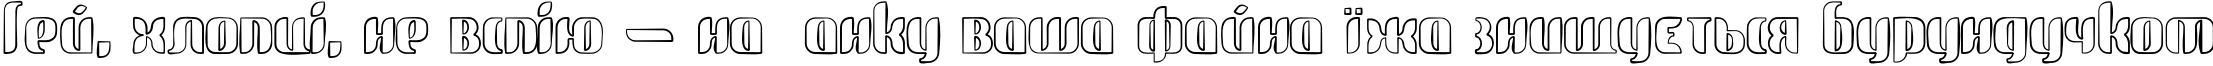 Пример написания шрифтом glide sketch sketch текста на украинском